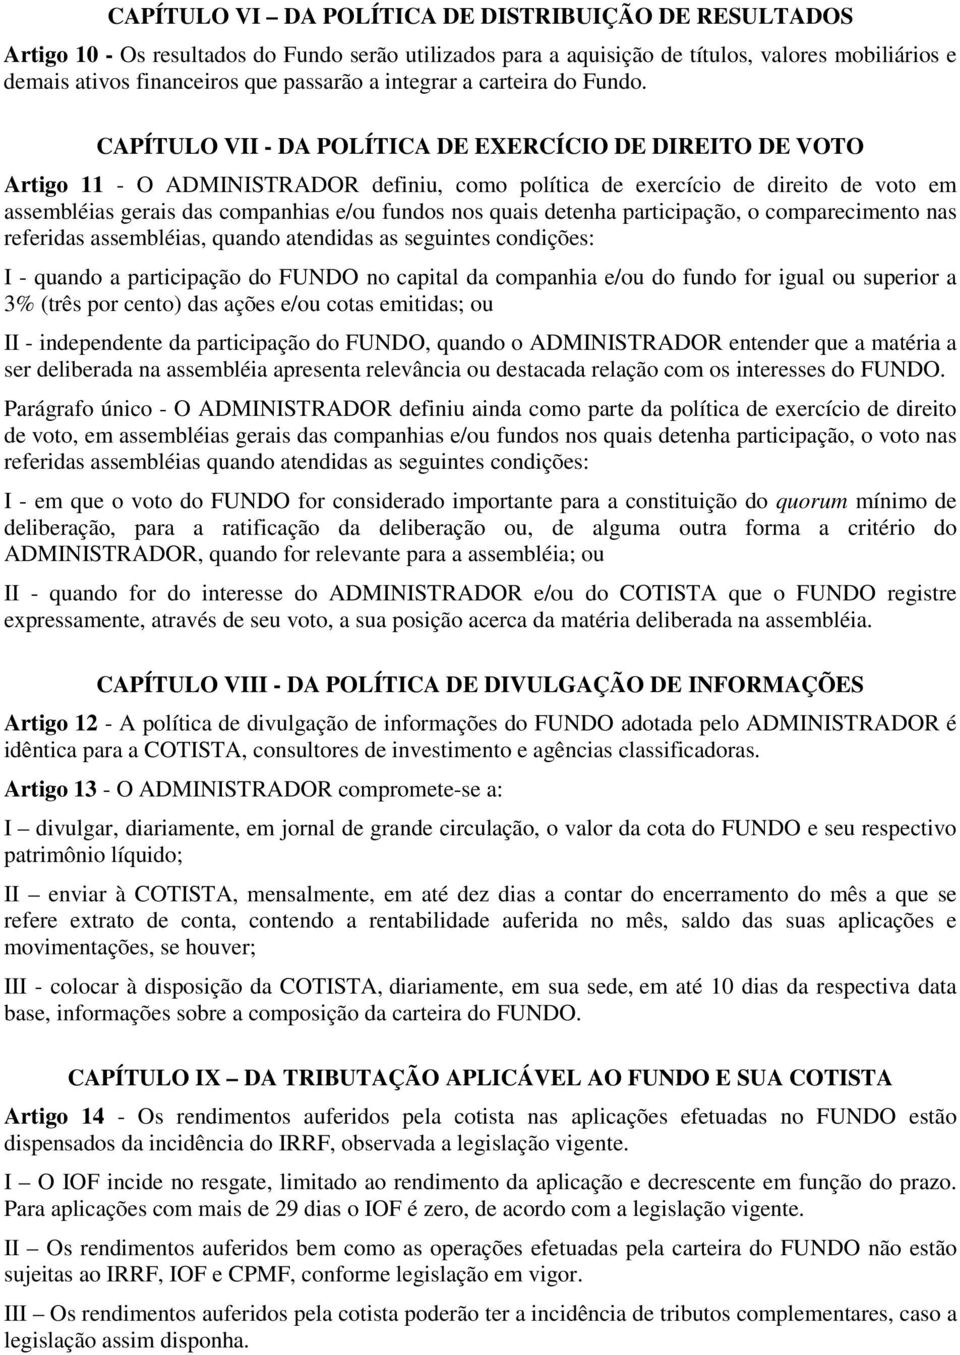 CAPÍTULO VII - DA POLÍTICA DE EXERCÍCIO DE DIREITO DE VOTO Artigo 11 - O ADMINISTRADOR definiu, como política de exercício de direito de voto em assembléias gerais das companhias e/ou fundos nos